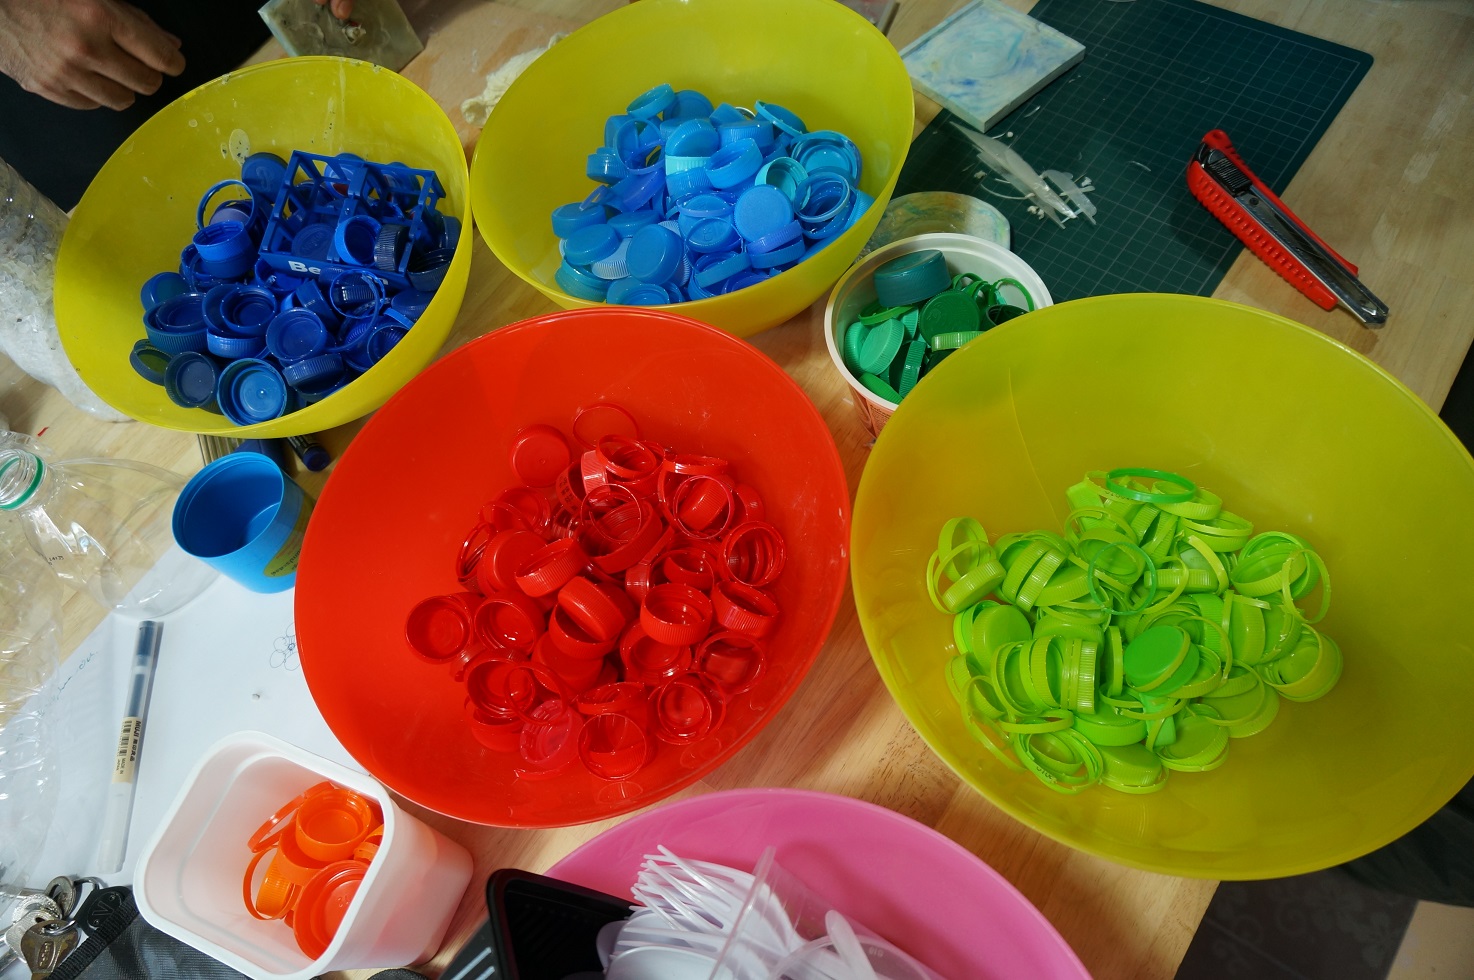 Yolo Plastikmüll Workshop: Bunte Flaschendeckel aus Plastik werden nach Farben sortiert, um sie zu recyceln © Sirinya Wattana